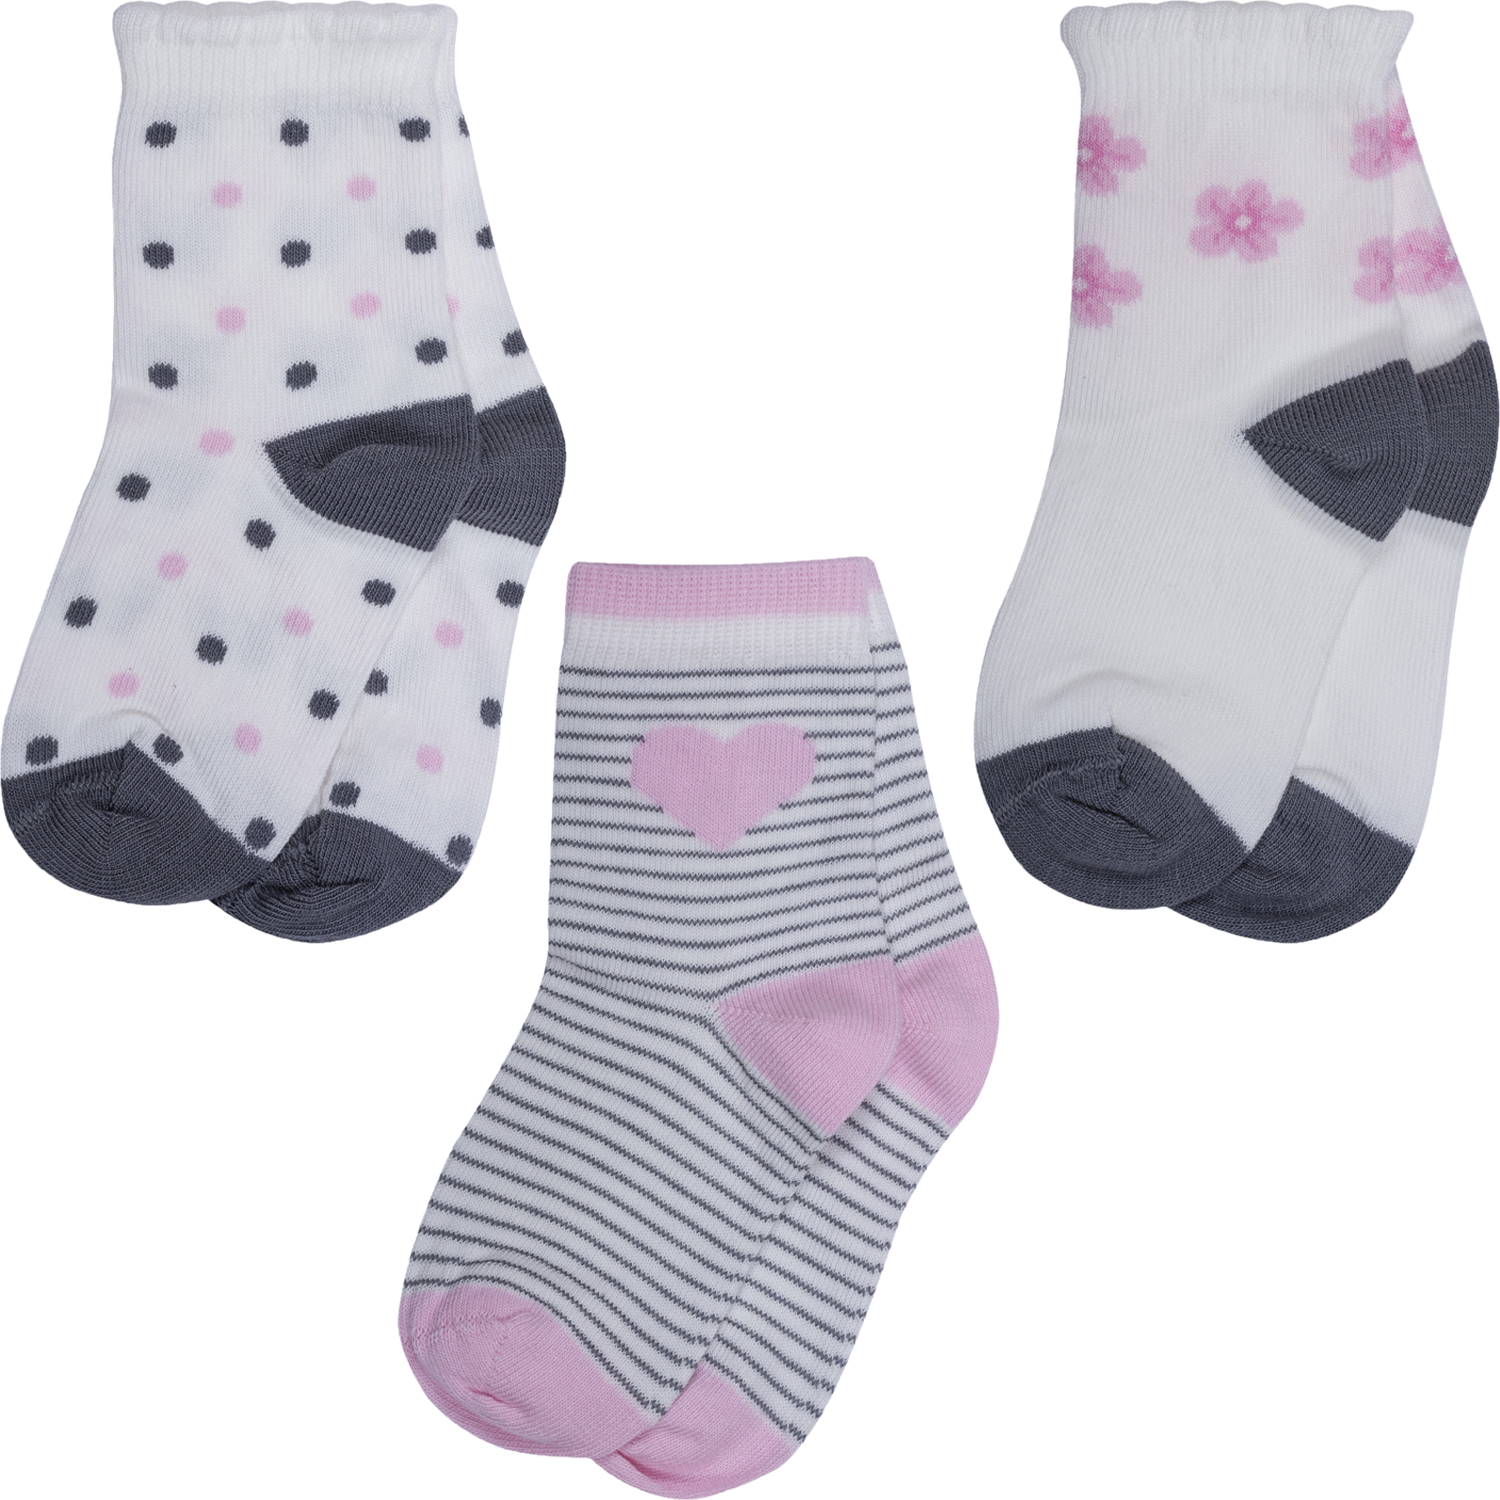 Носки для девочек Rusocks 3-Д3-13794 цв. белый; серый; розовый р. 12-14 бюстгальтер push up розовый с деталями из сетки в горошек